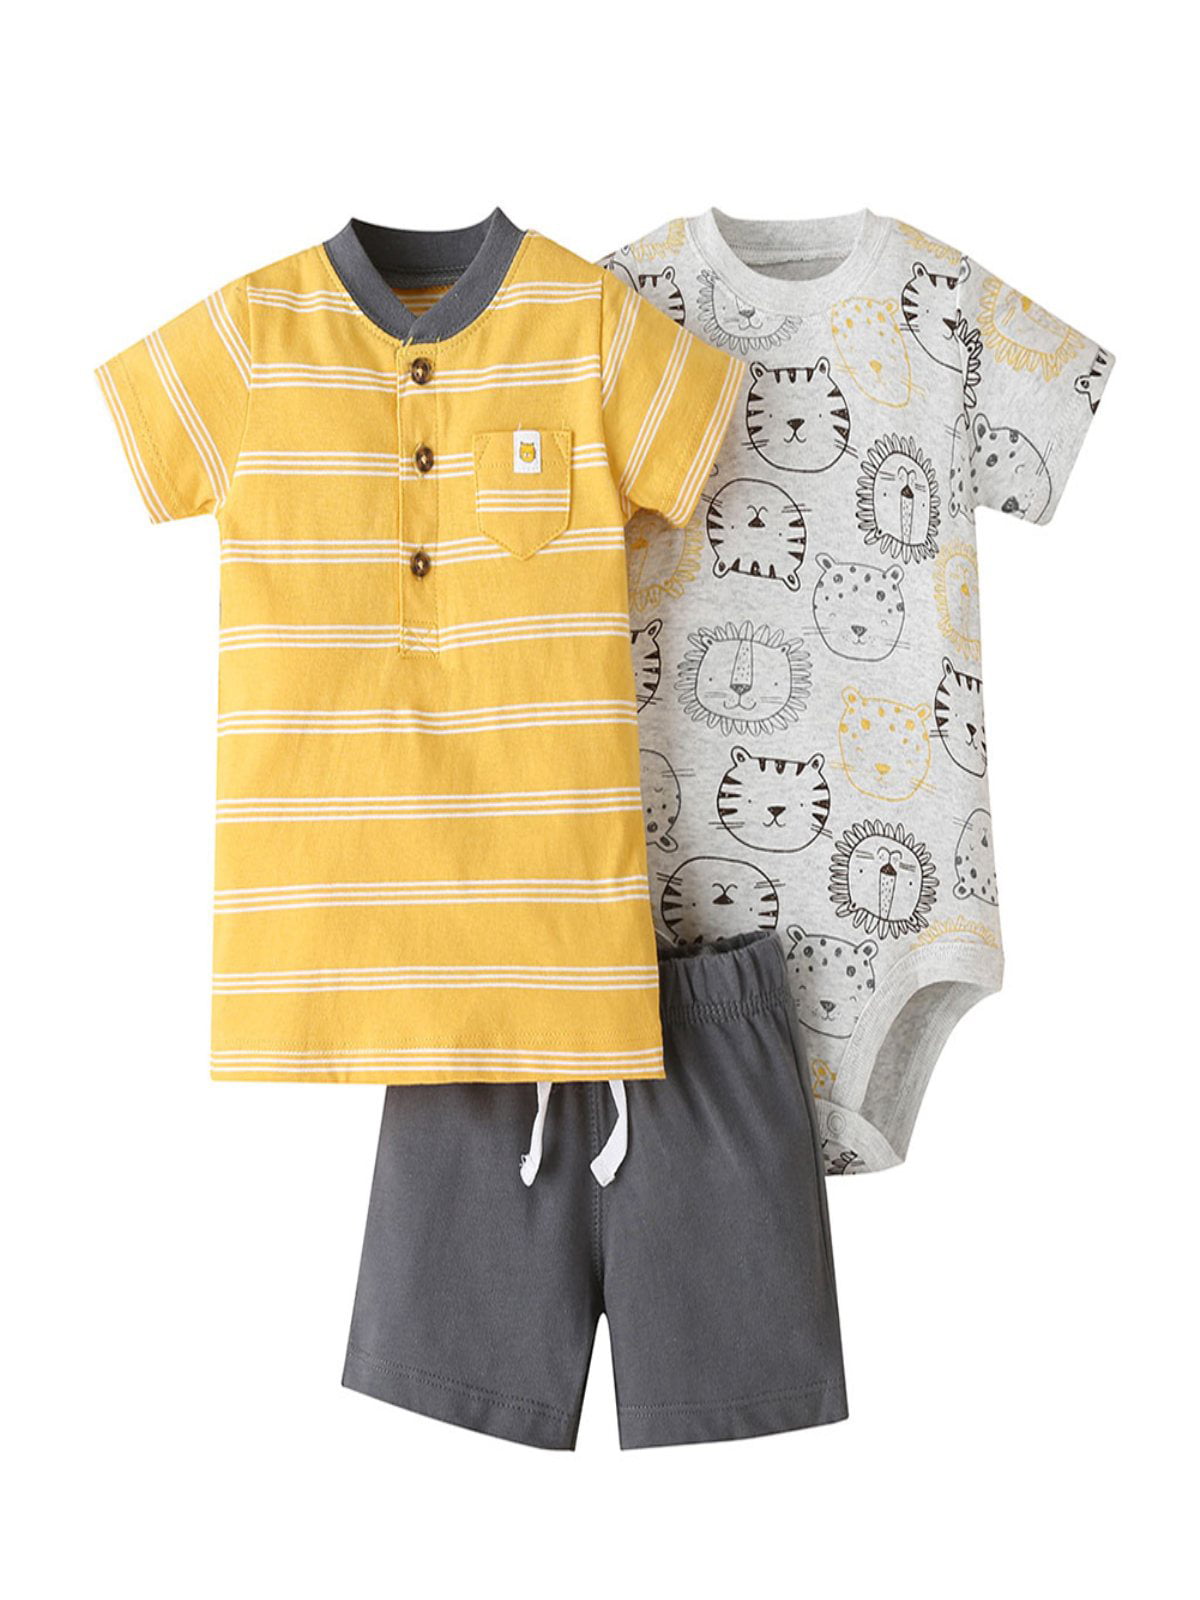 Details about   3pcs Baby Kids Boys Dress Suit Coat+Plaids Shirt+Denim Pants Outfits Clothes Set 